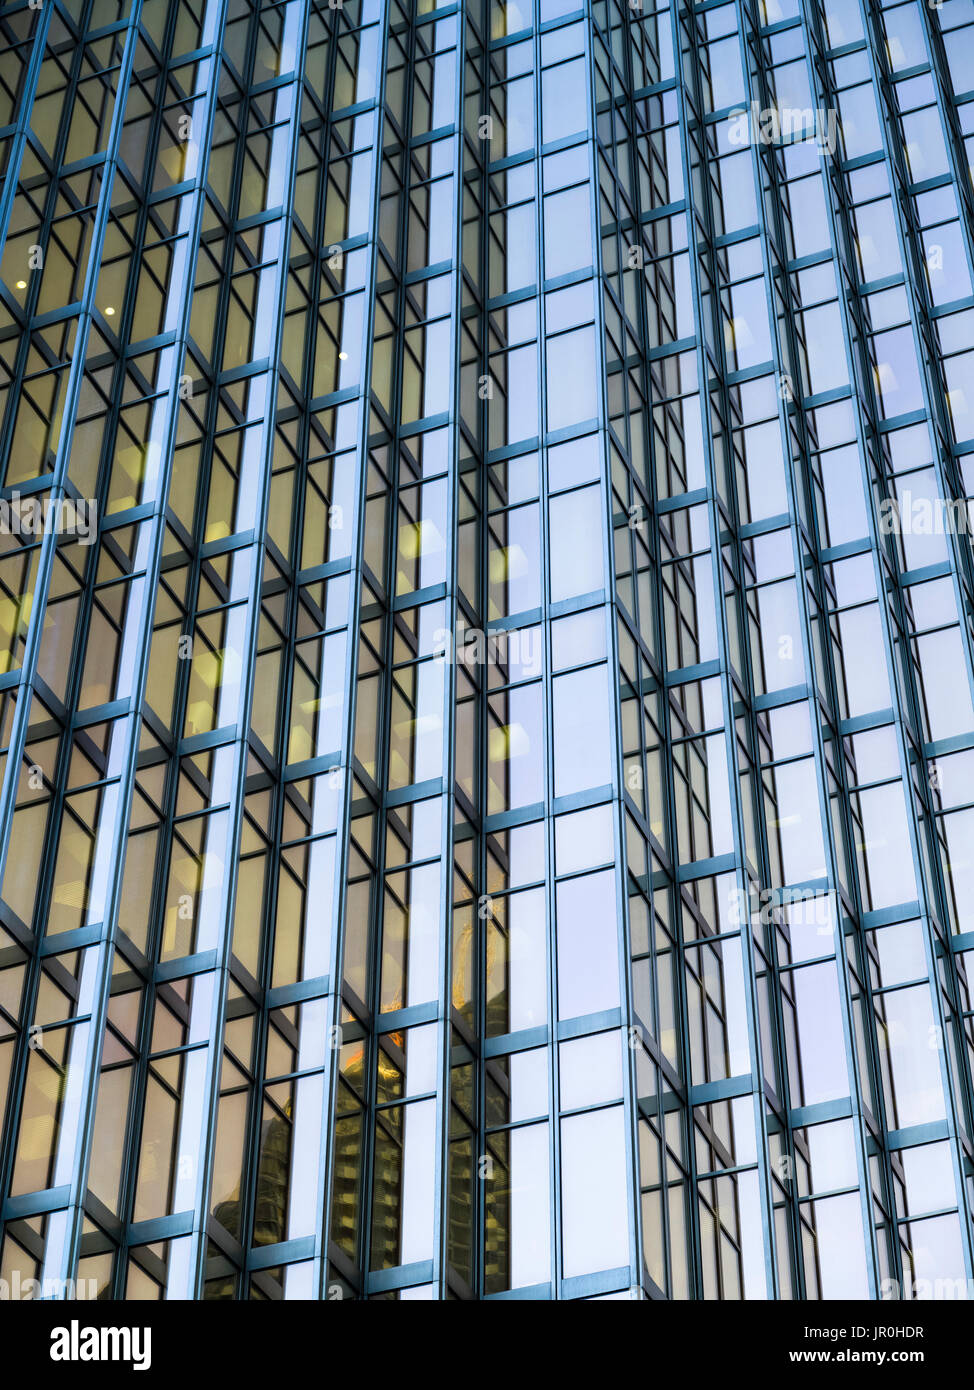 Vista in dettaglio della facciata di vetro di un edificio per uffici, Royal Bank Plaza; Toronto, Ontario, Canada Foto Stock